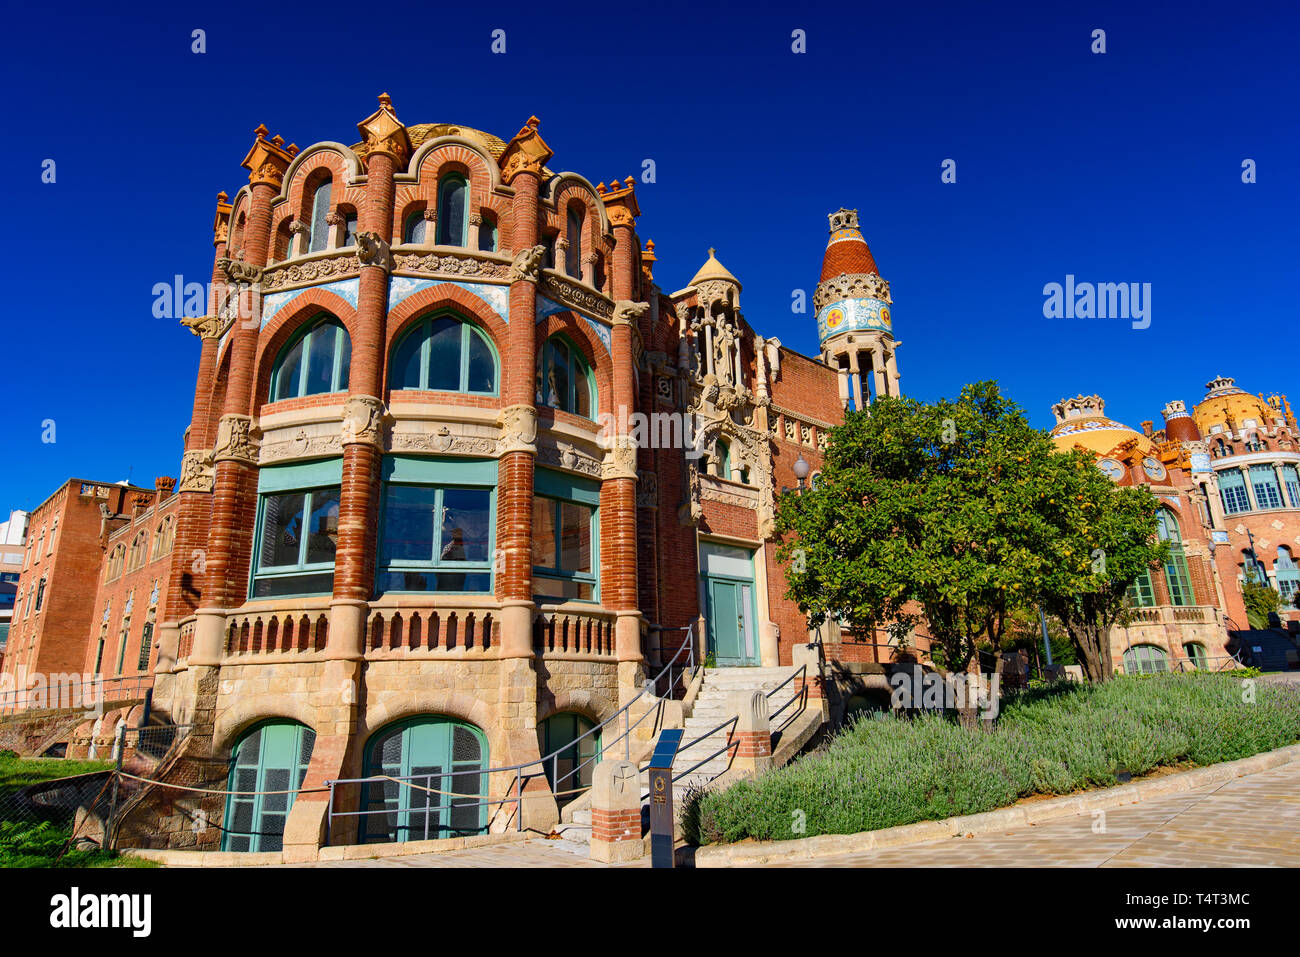 Hôpital de la Sainte Croix et Saint Paul (hôpital de la Santa Creu i Sant Pau) par Domènech, Site du patrimoine mondial de l'UNESCO à Barcelone, Espagne Banque D'Images